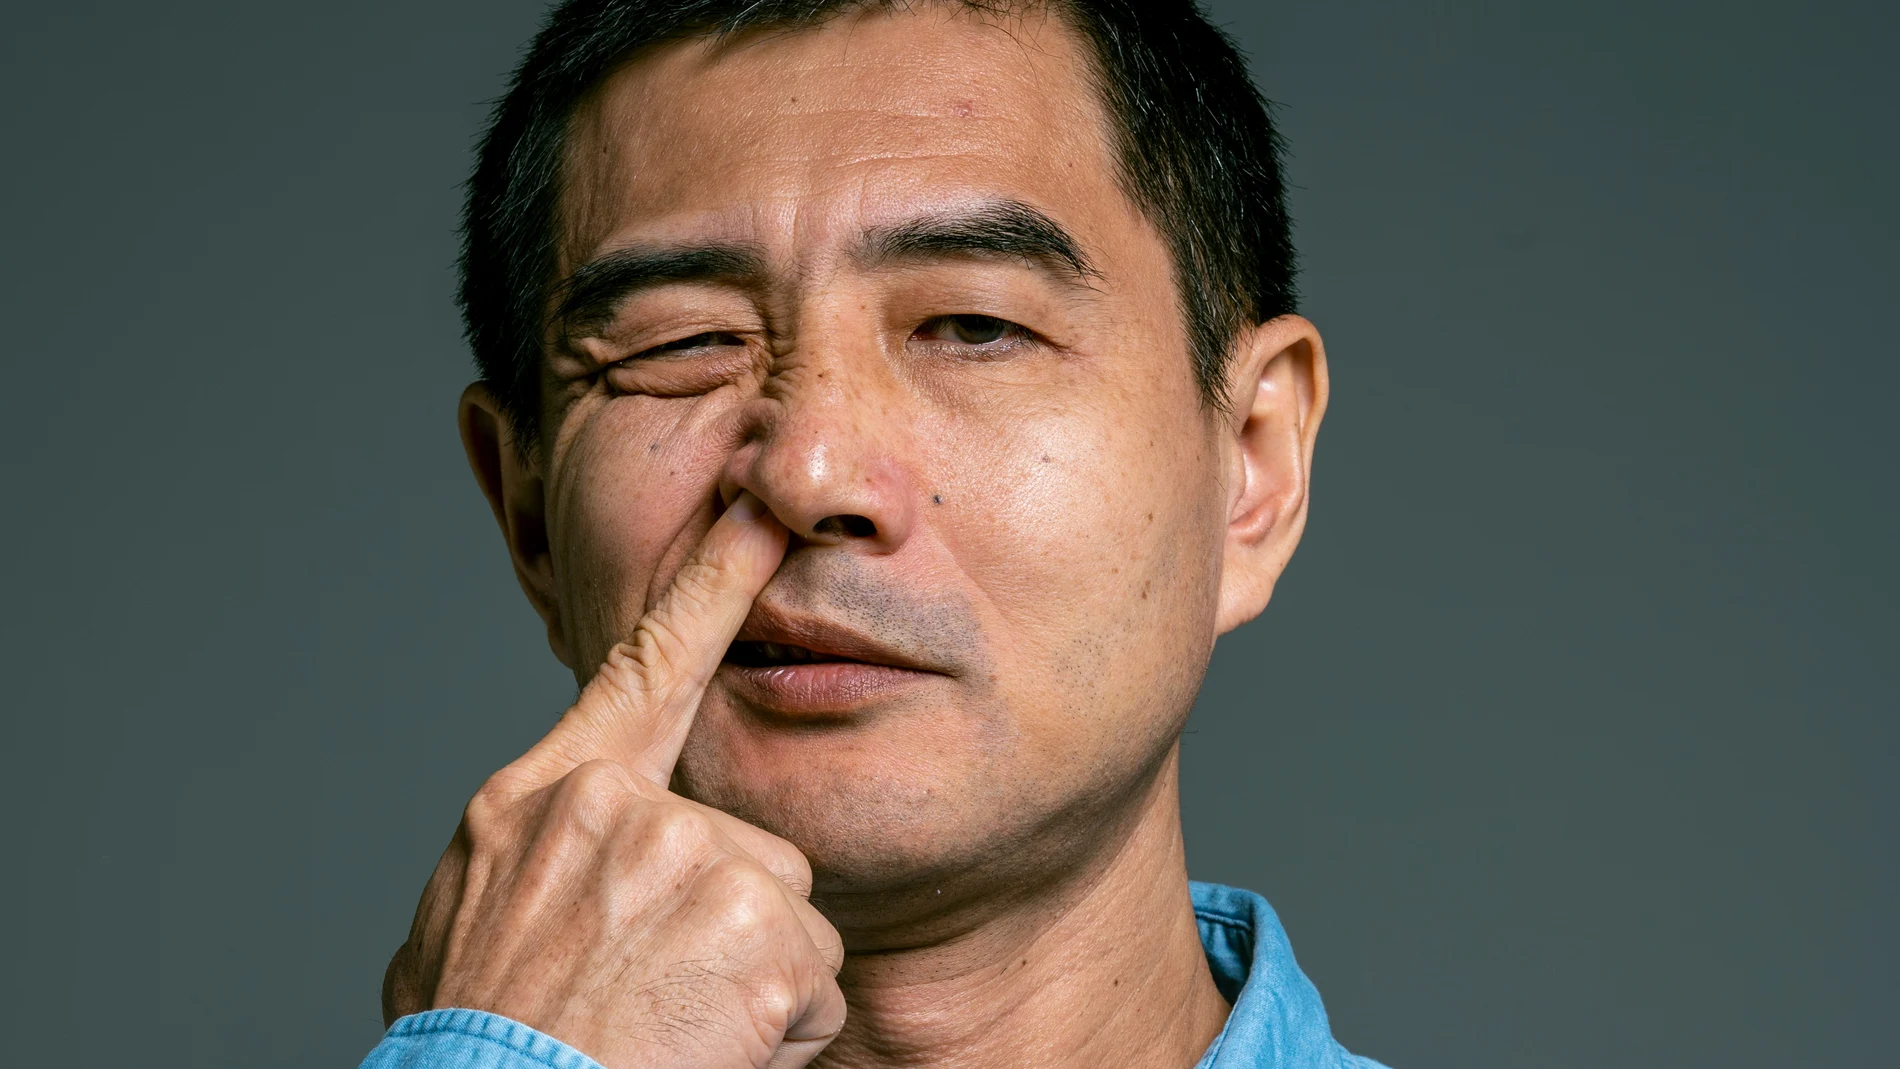 Hurgarse la nariz podría ralentizar la aparición del Alzheimer